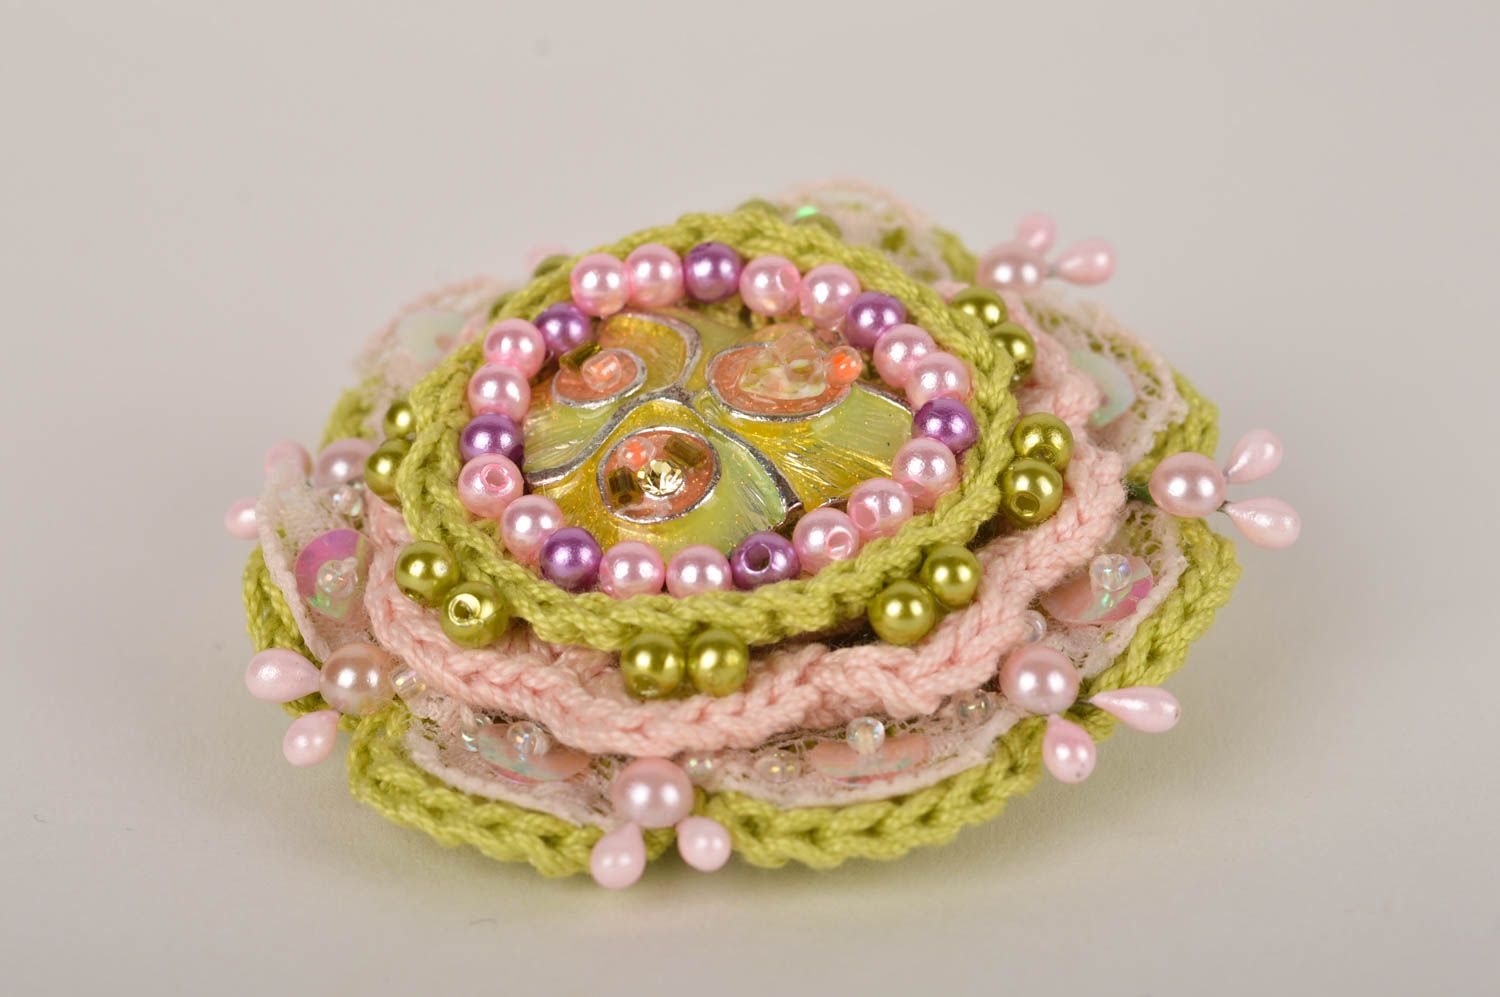 Flower Crochet Hair Clip with a Bead